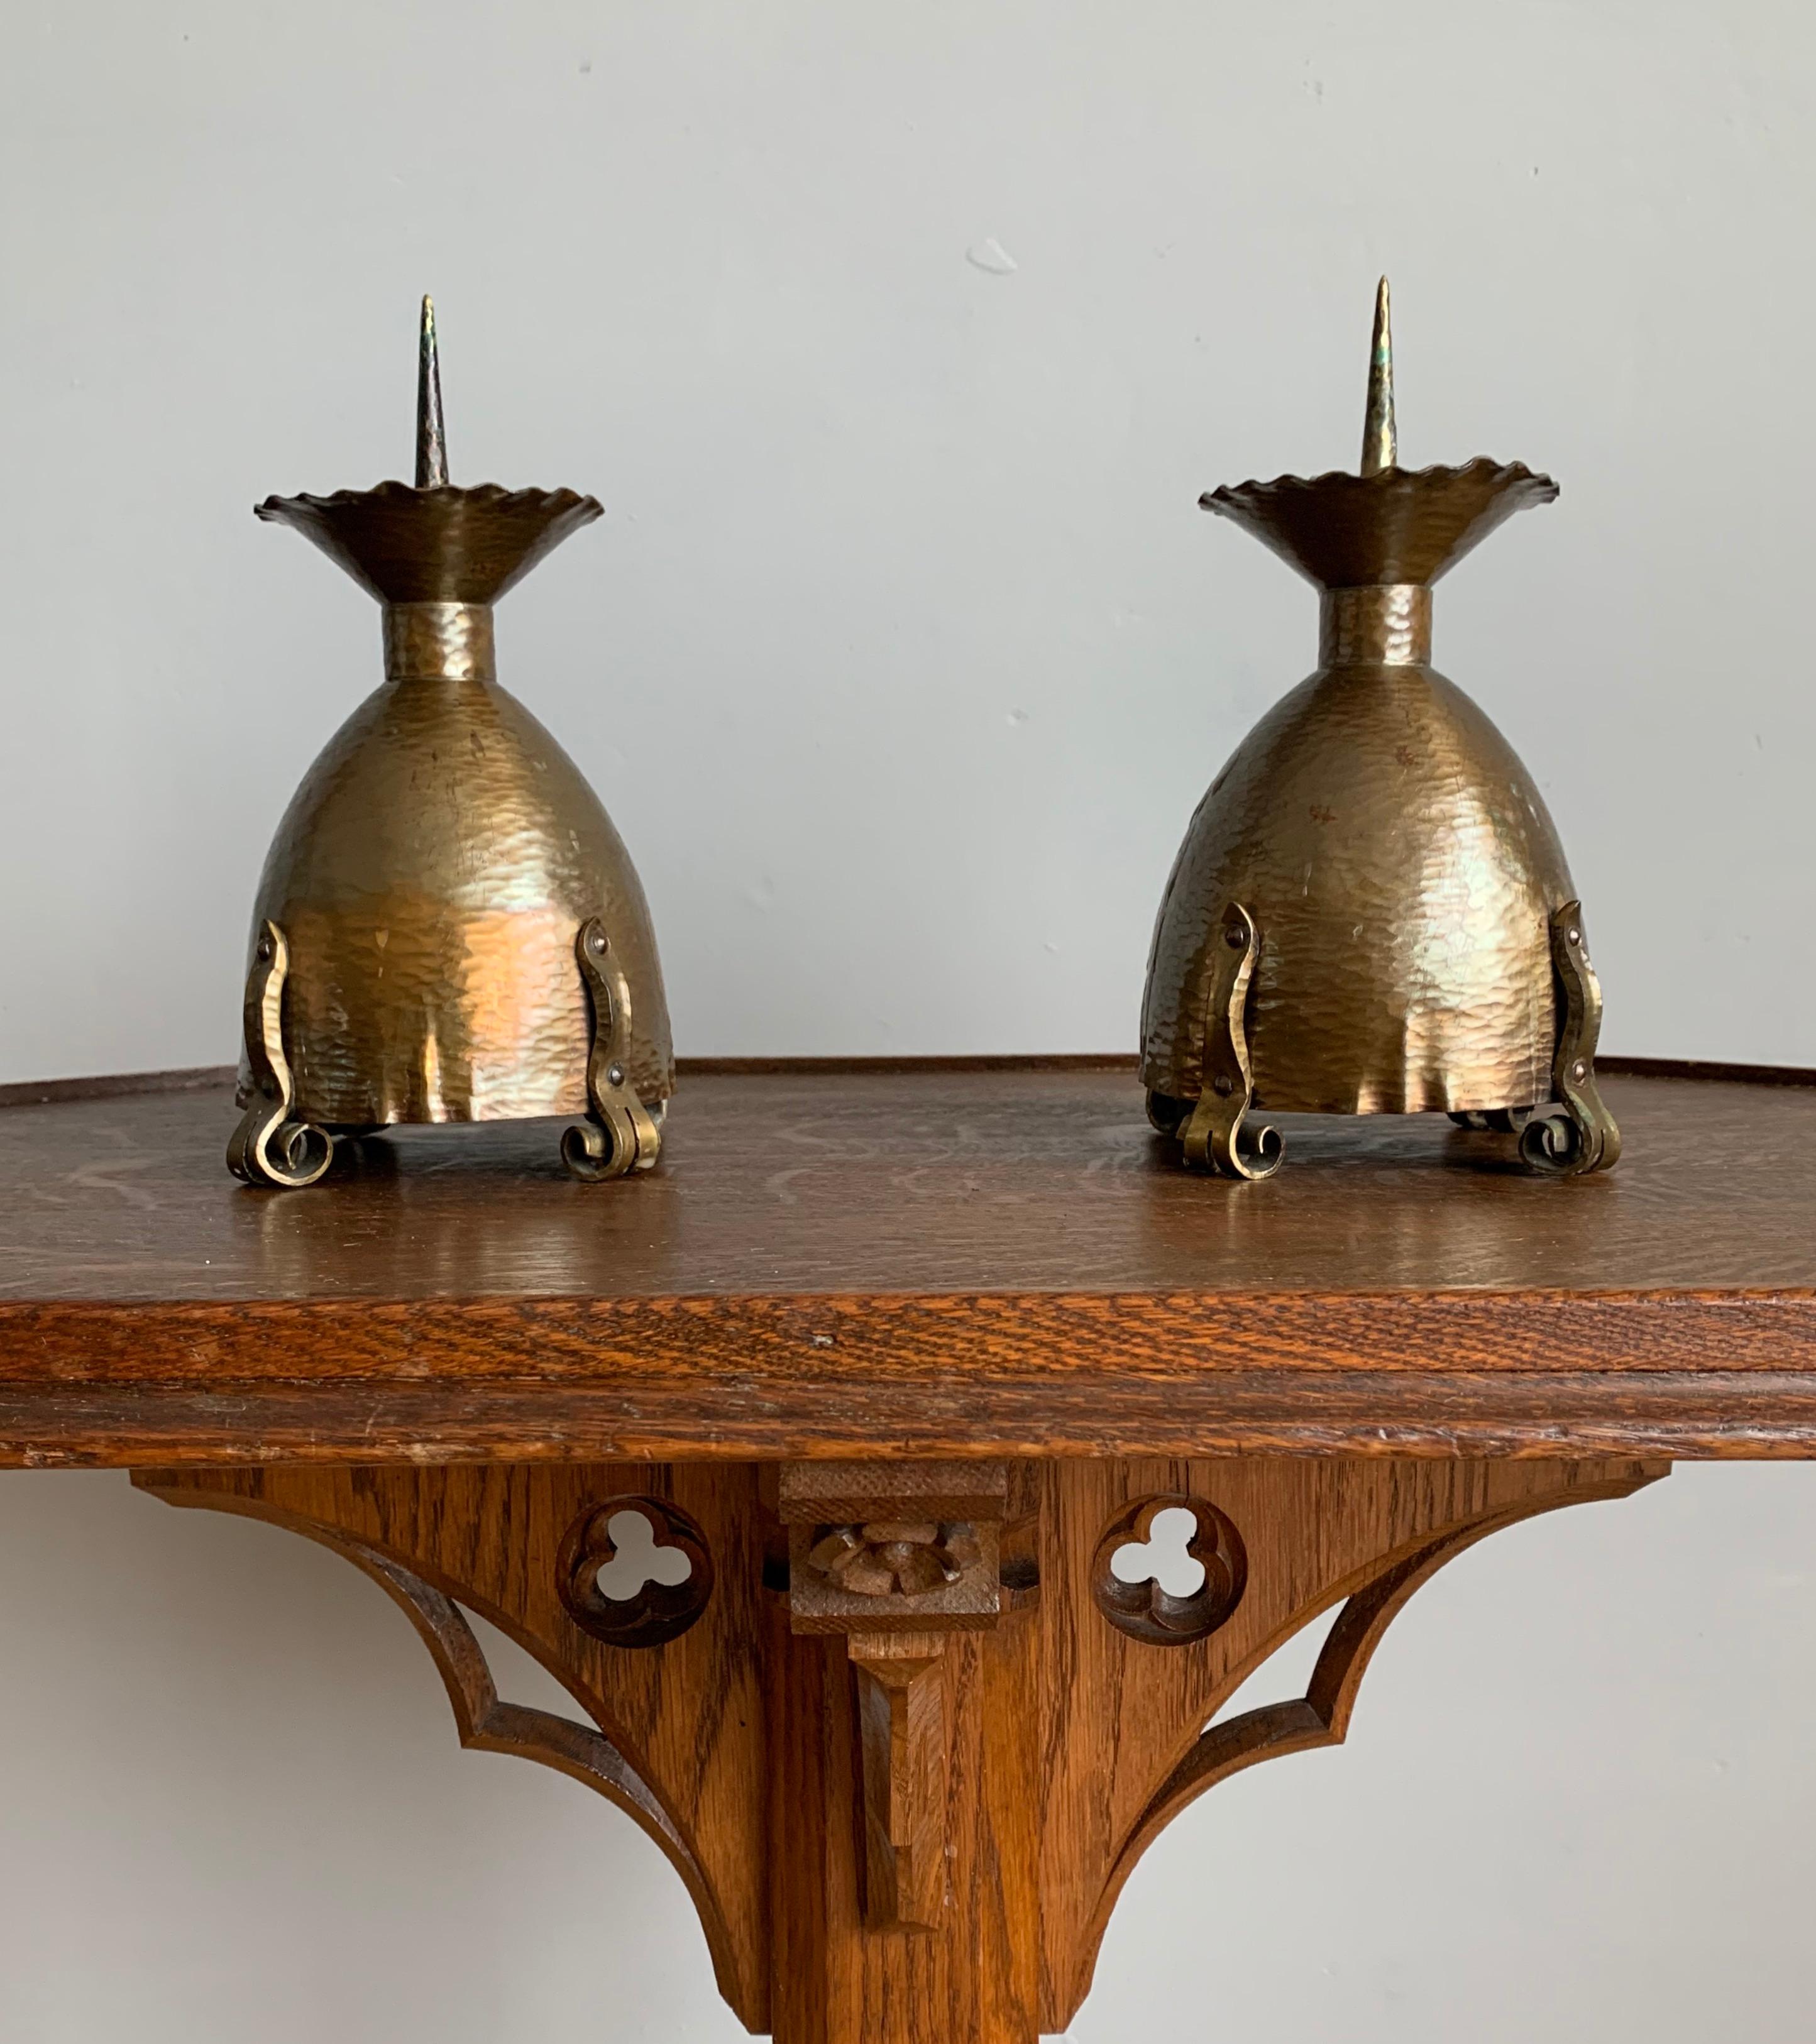 Belle et très élégante paire de chandeliers gothiques fabriqués à l'époque Arts & Crafts.

Si vous êtes à la recherche d'antiquités rares et de bonne qualité dans le style gothique pour embellir votre espace de vie, cette paire forgée à la main et